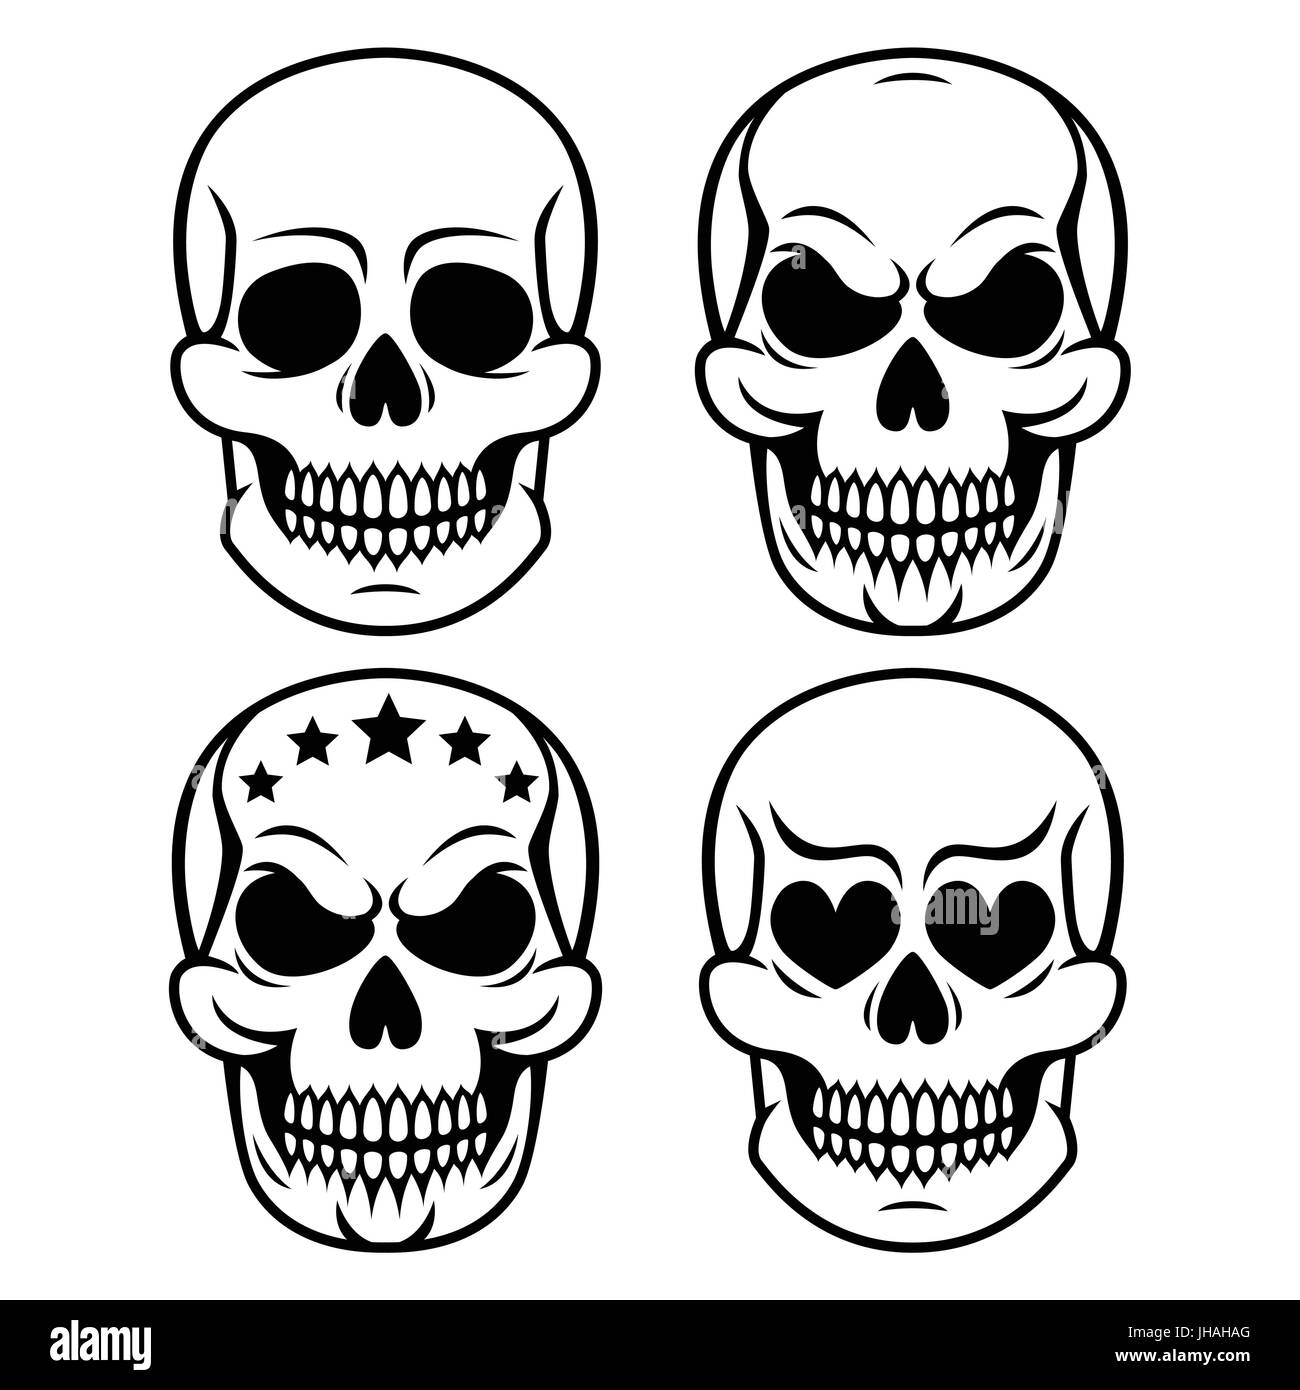 Crâne humain Halloween design - la mort, le Jour des Morts Illustration de Vecteur